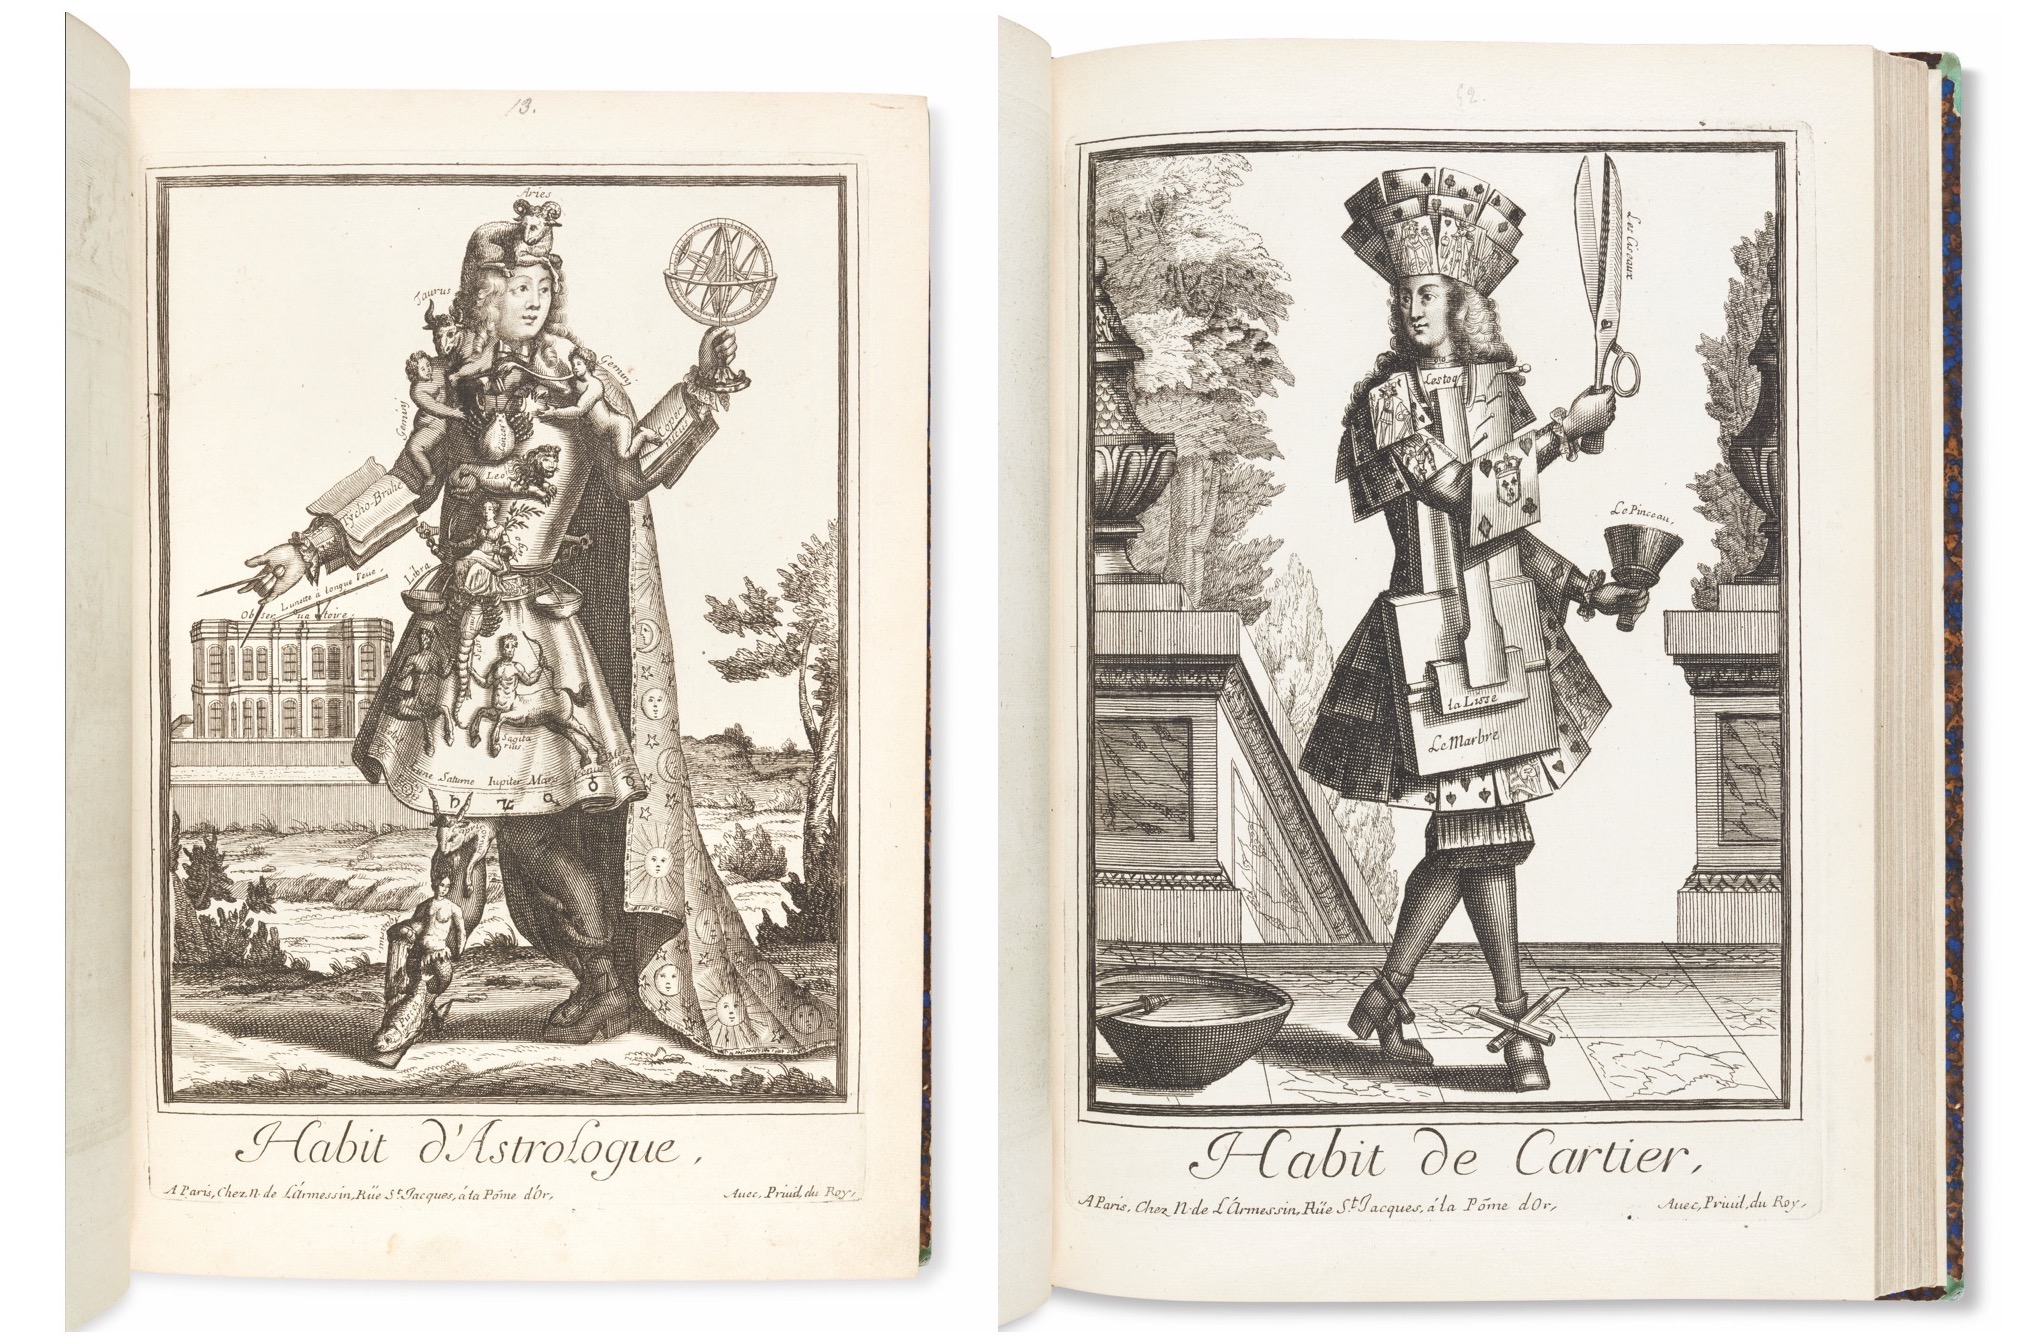 LARMESSIN, Nicolas Ier de (1632-194), et d'autres. Costumes grotesques et métiers. Paris, vers 1690.